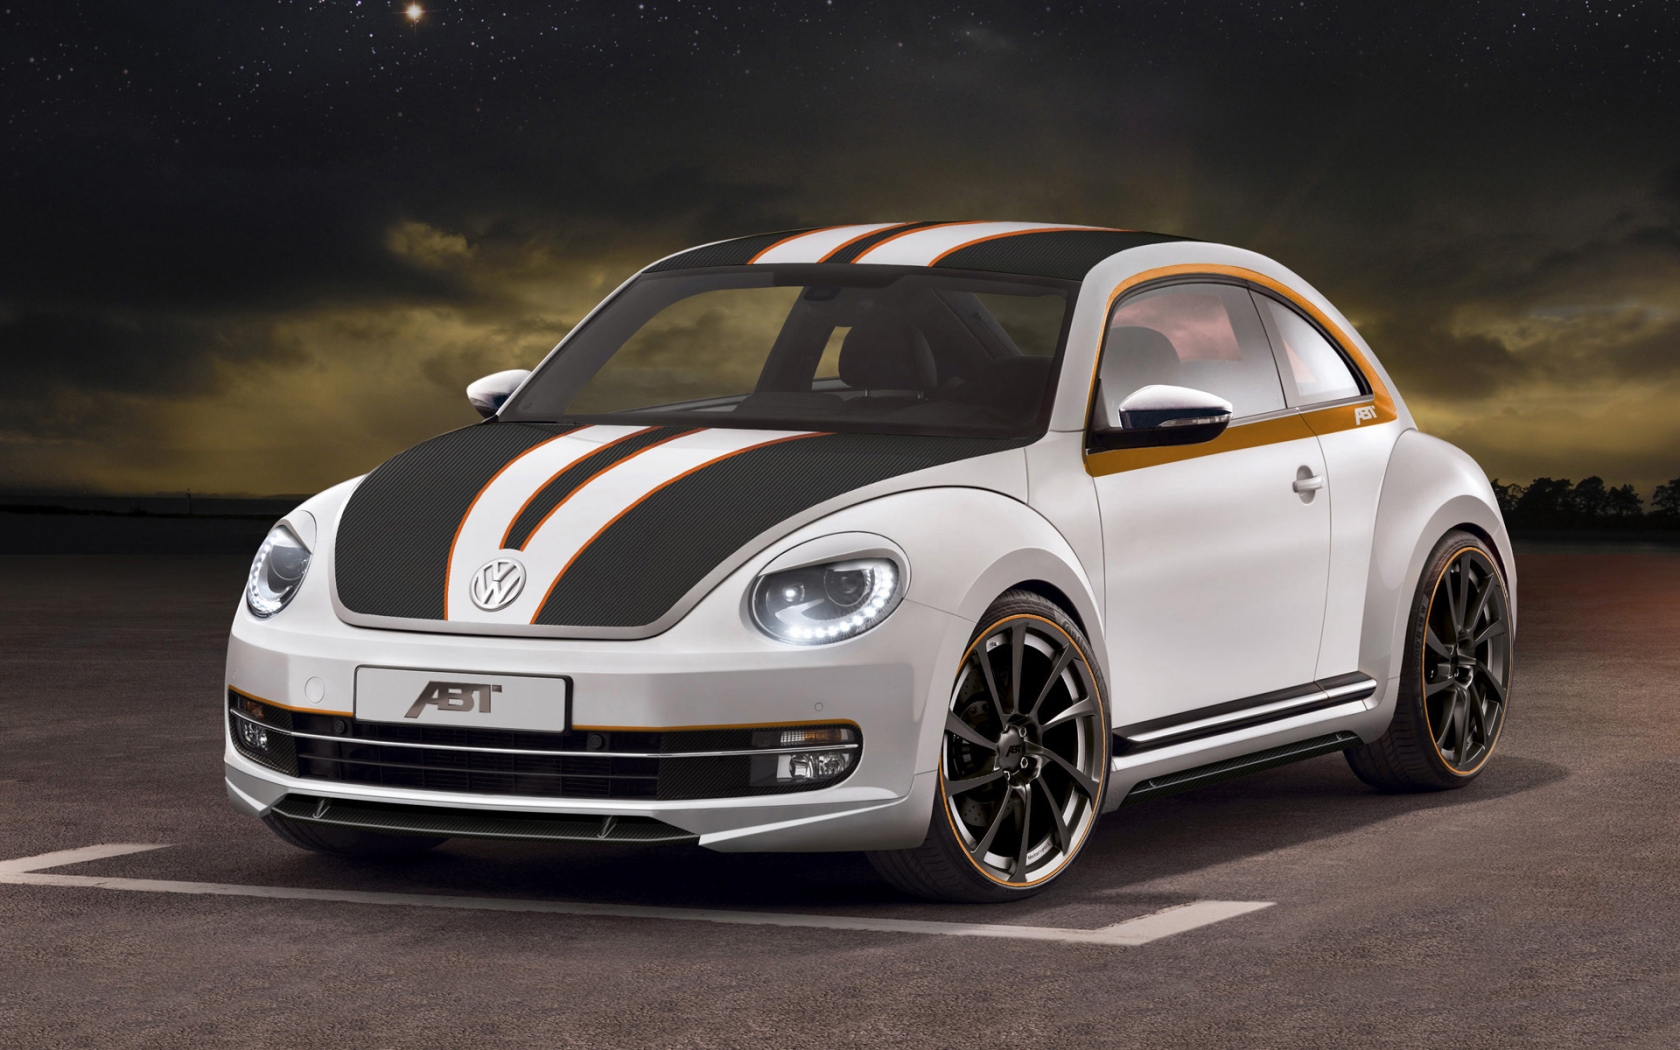 2012 ABT Volkswagen Beetle for 1680 x 1050 widescreen resolution